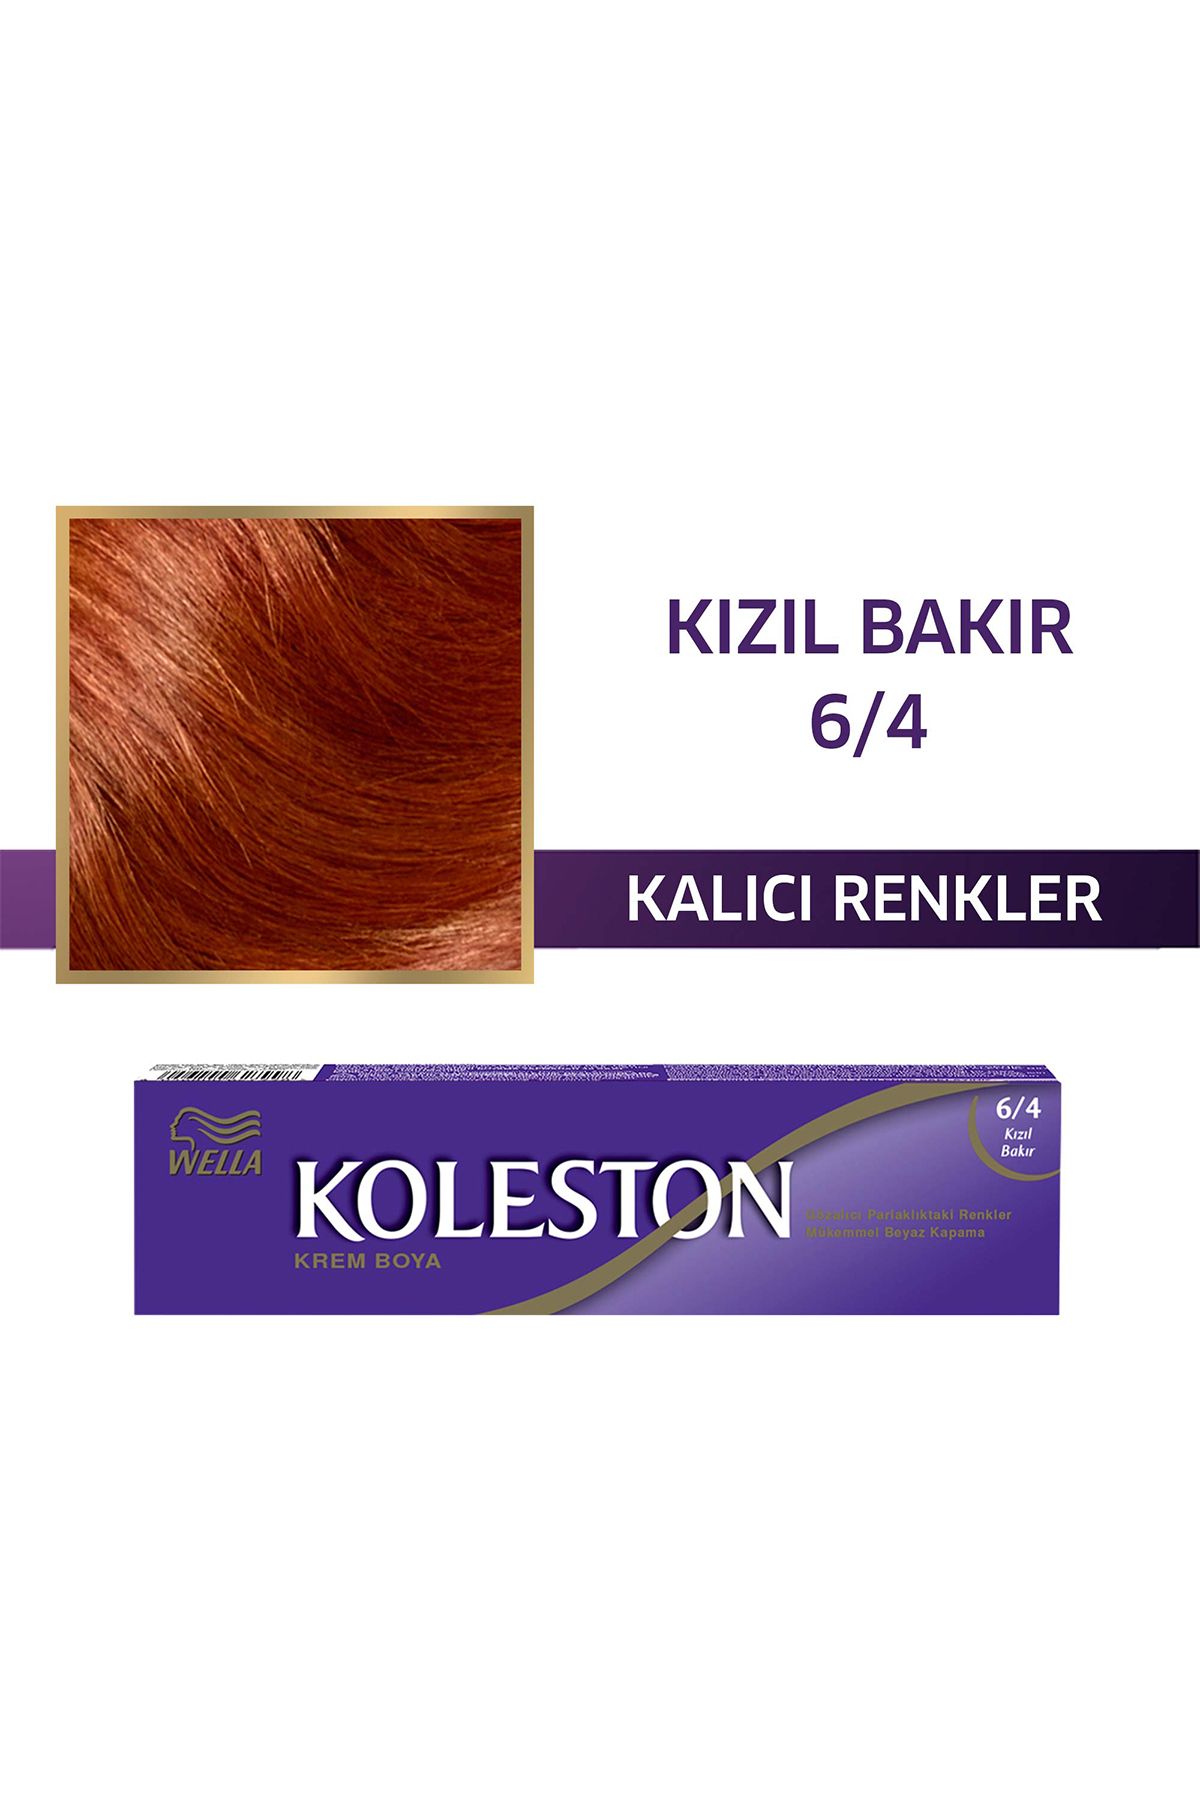 Koleston Single Tüp Boya 6/4 Kızıl Bakir_1